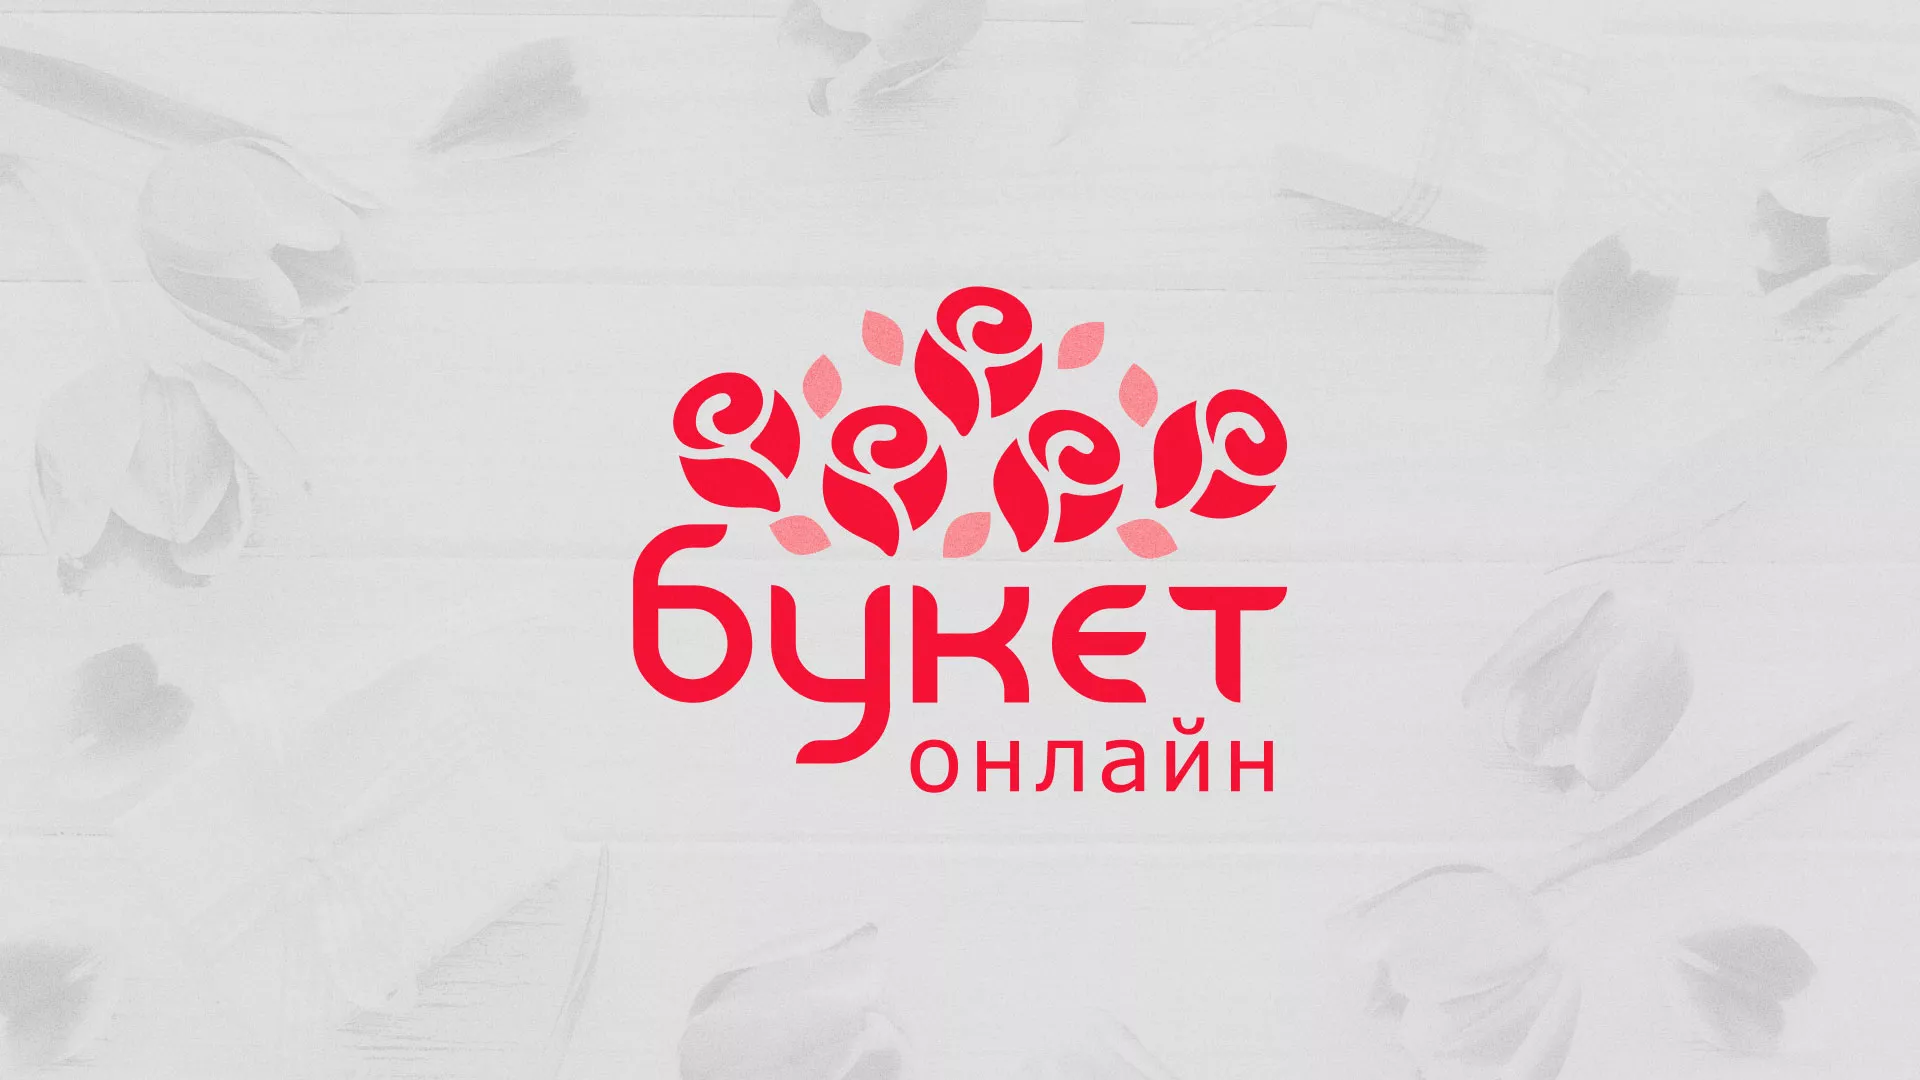 Создание интернет-магазина «Букет-онлайн» по цветам в Елизово